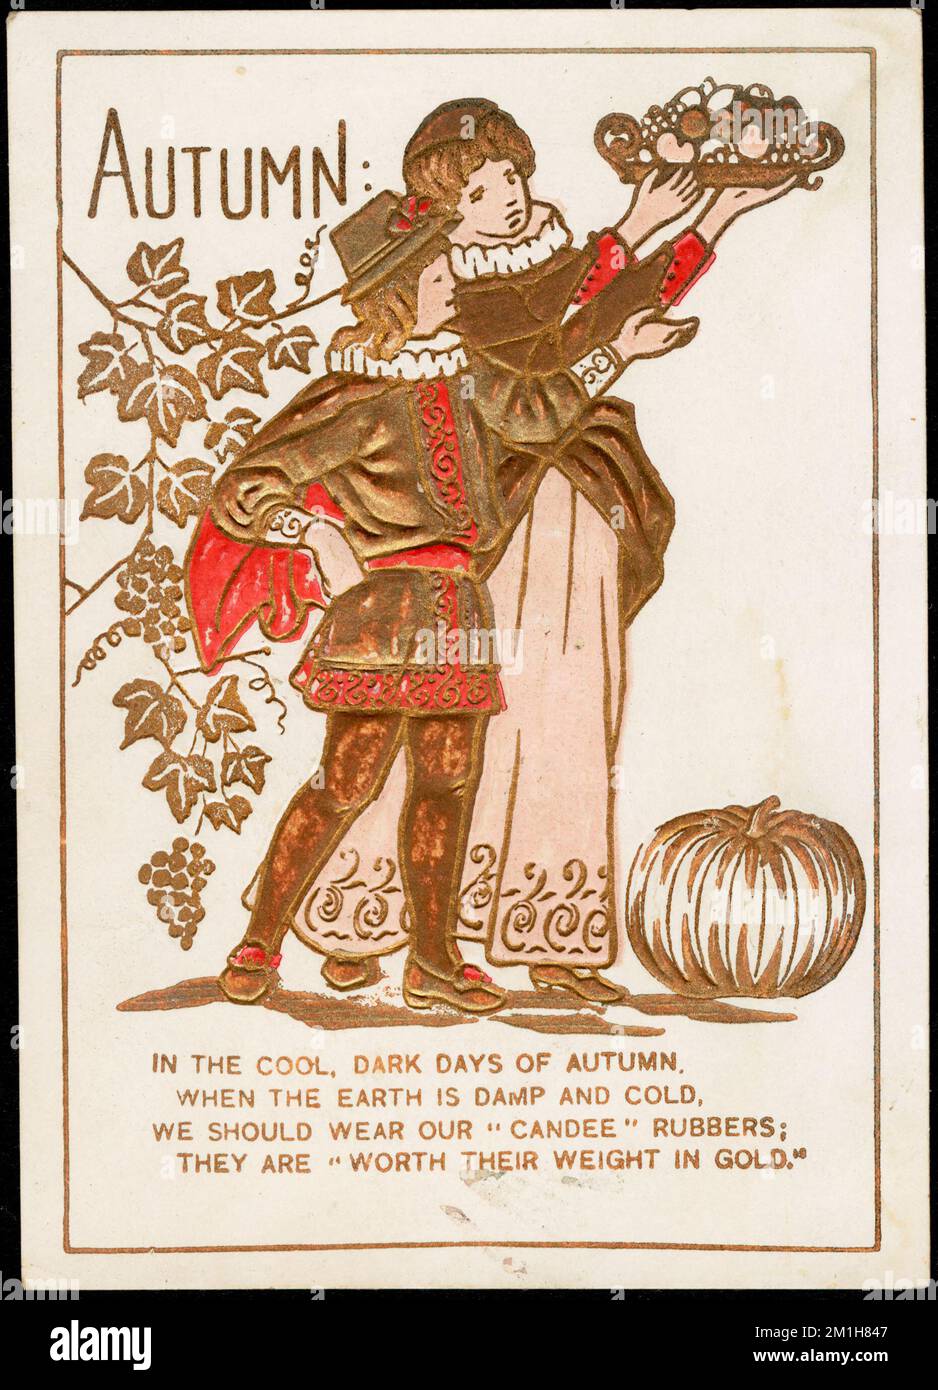 Herbst: In den kühlen, dunklen Herbsttagen, wenn die Erde feucht und kalt ist, sollten wir unsere "Candee"-Gummi tragen; sie sind "ihr Gewicht in Gold wert" , Erwachsene, Gummischuhe, American Trade Cards des 19.. Jahrhunderts Stockfoto